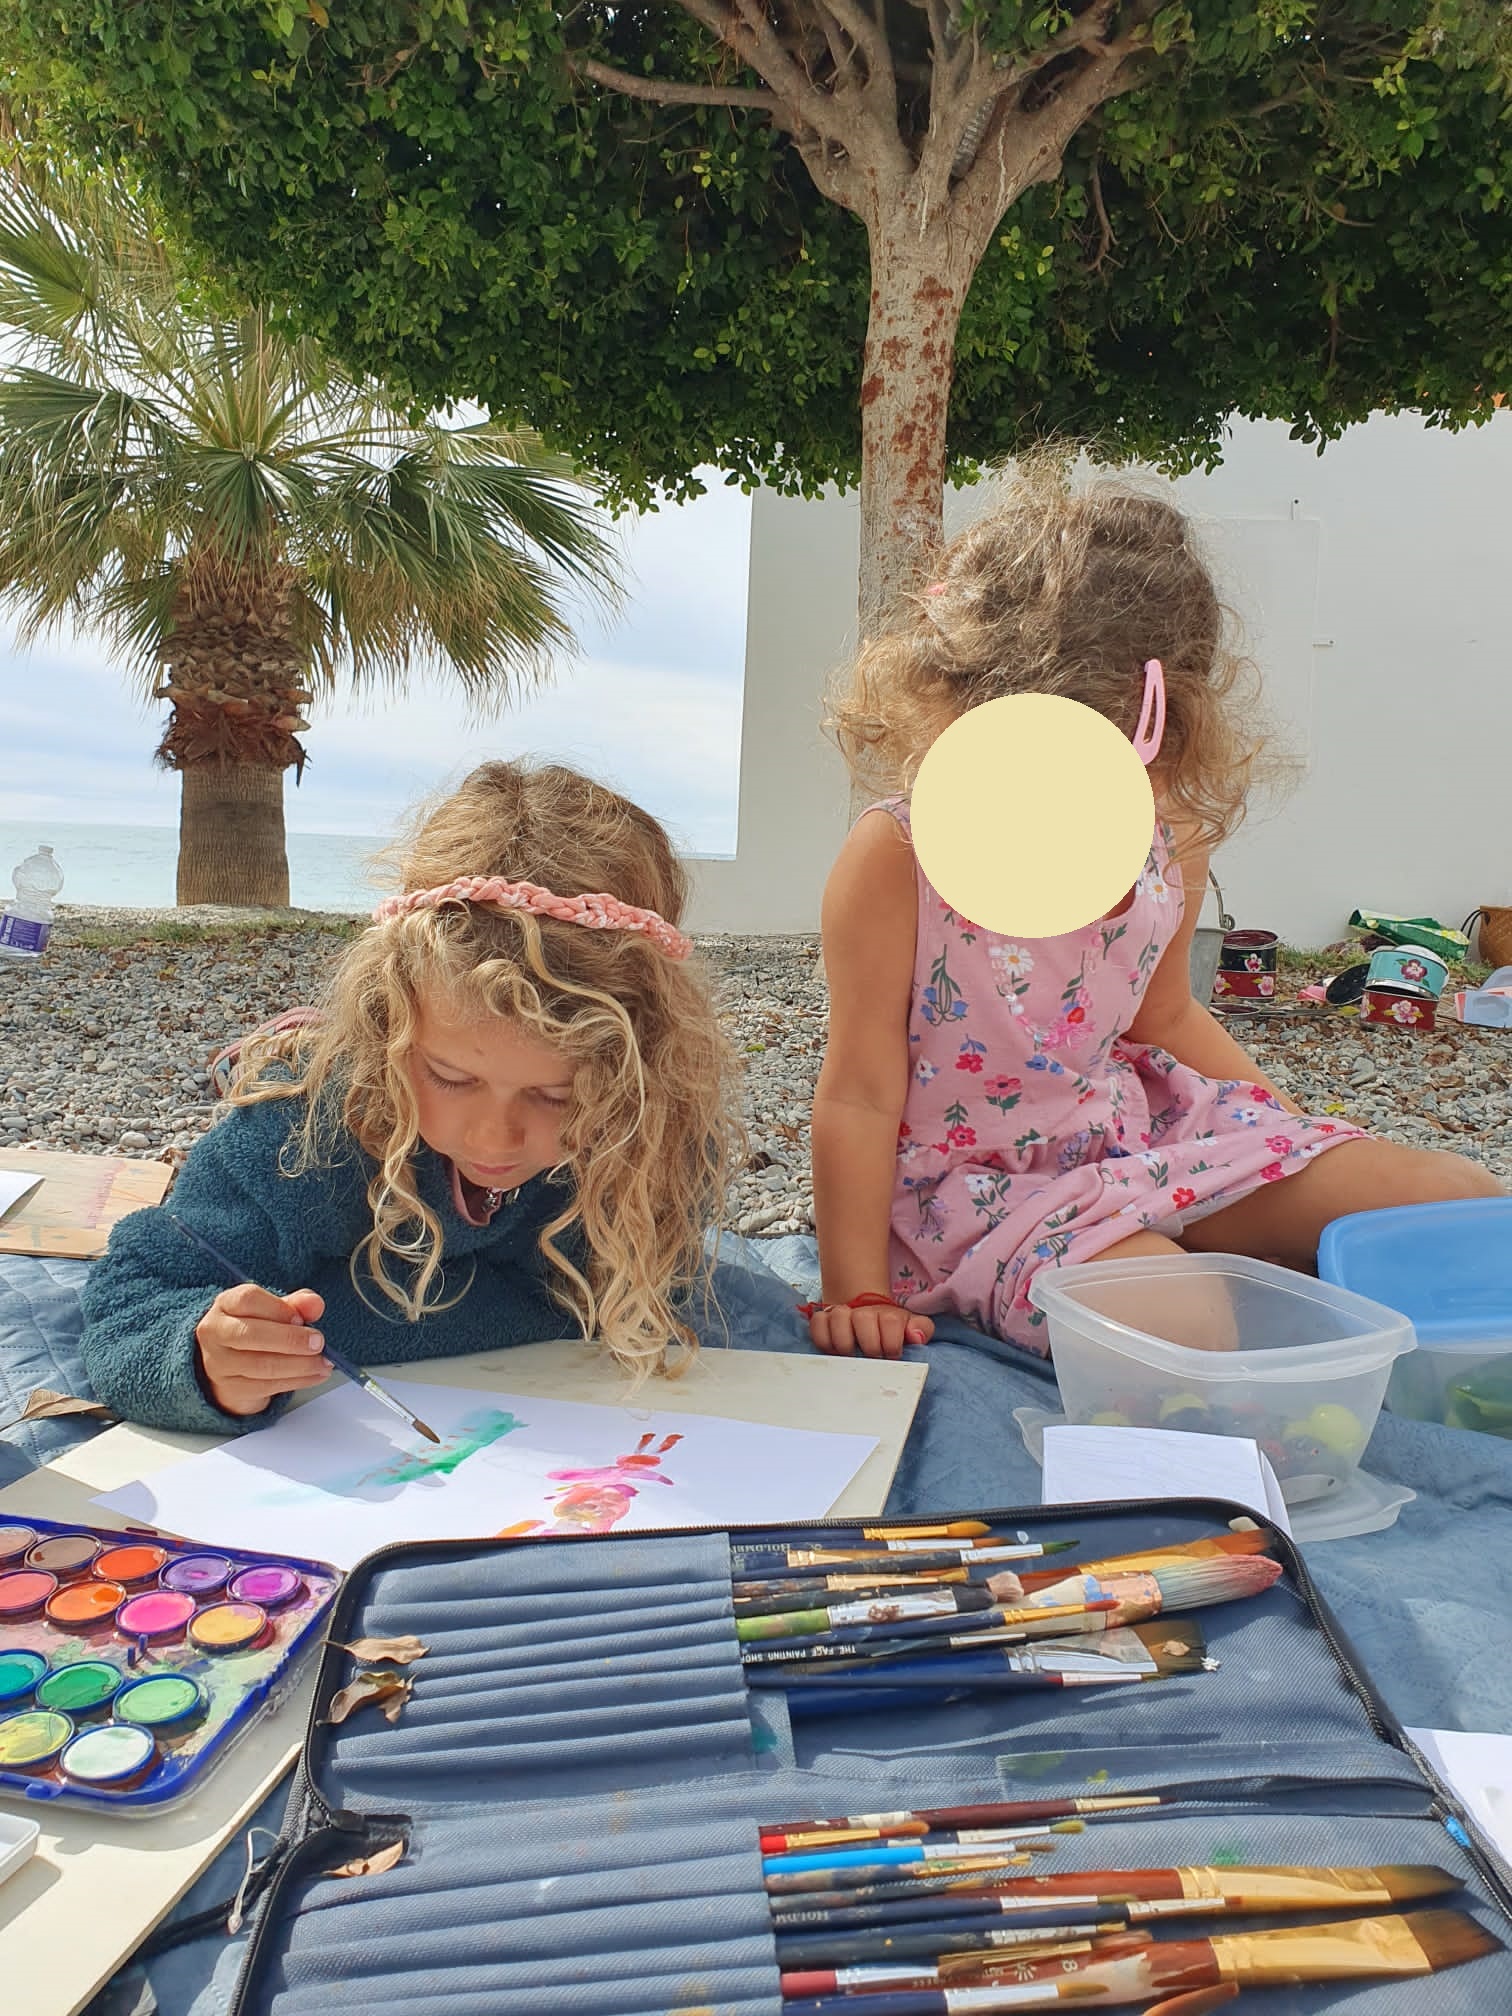 Kids art class on the beach in la herradura, spain